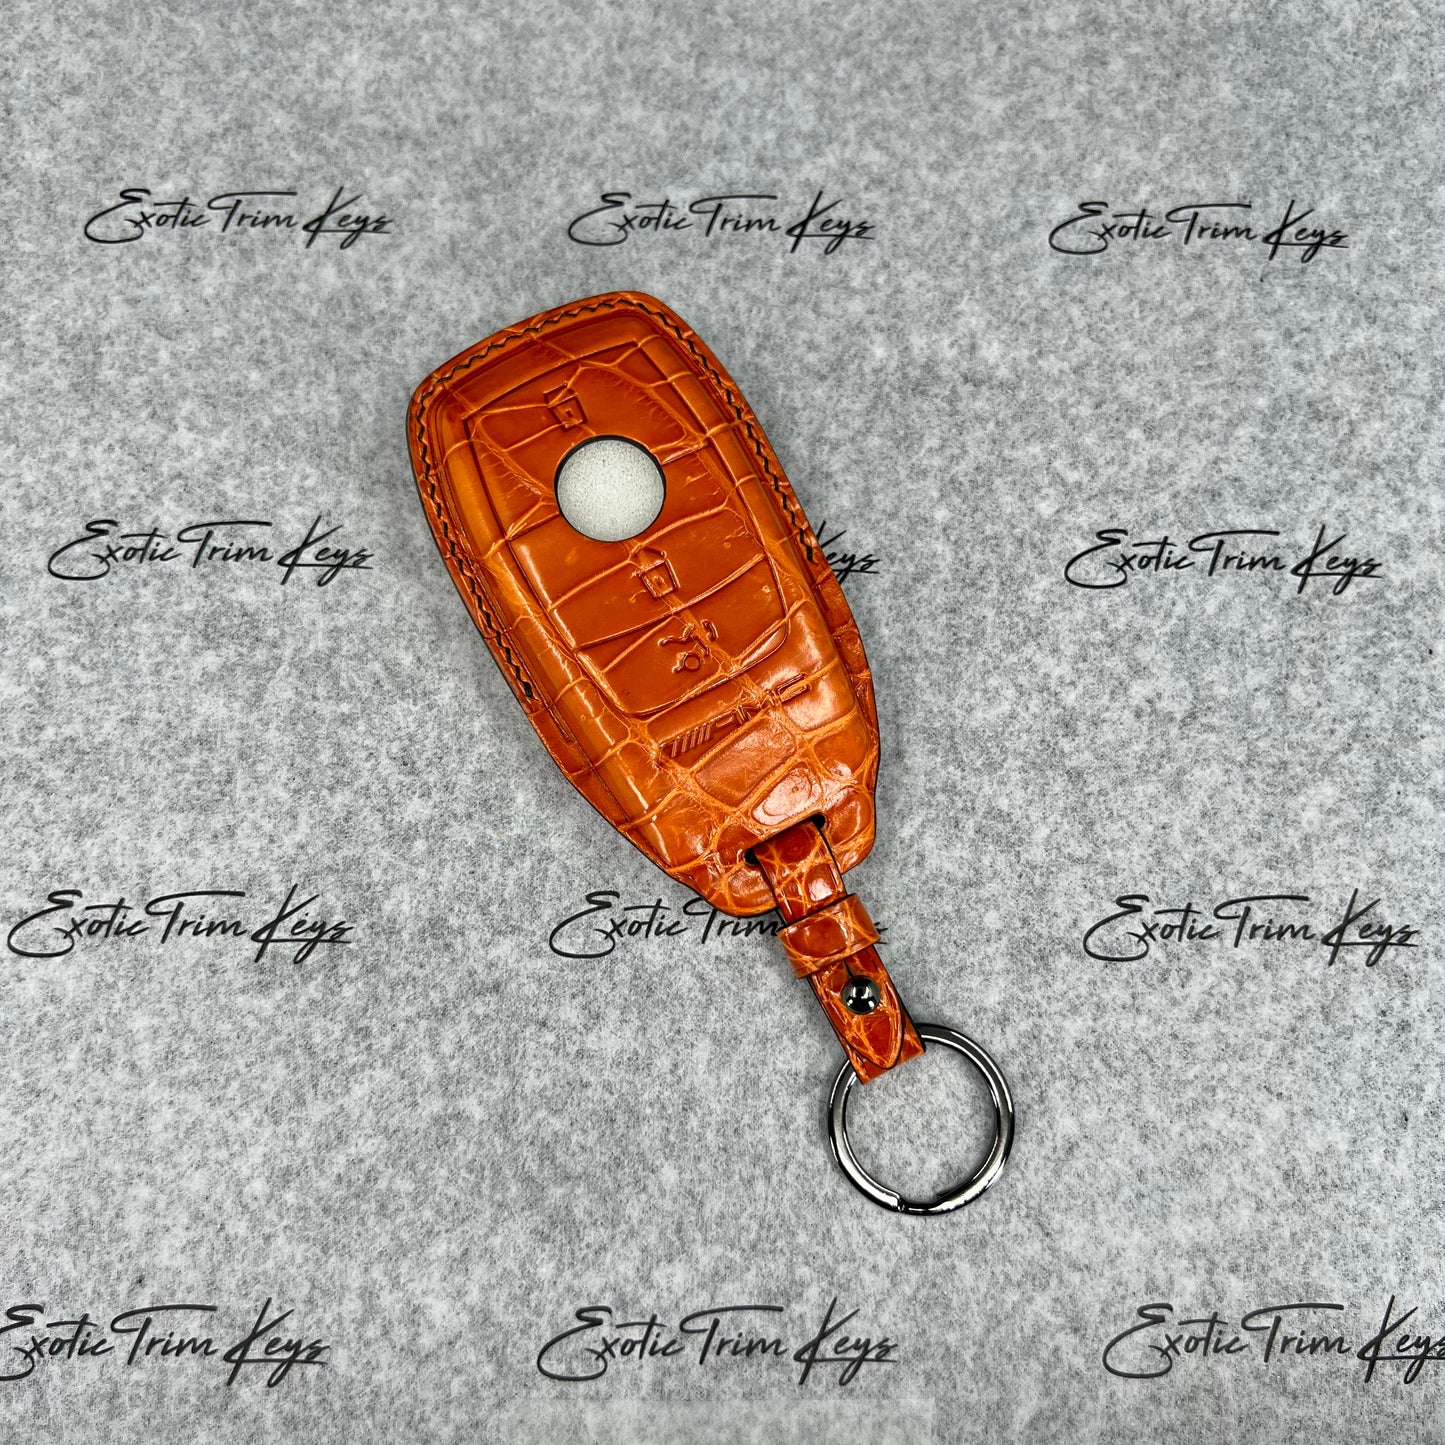 غطاء مفتاح مرسيدس AMG - جلد التمساح البرتقالي / خياطة سوداء - متوفر